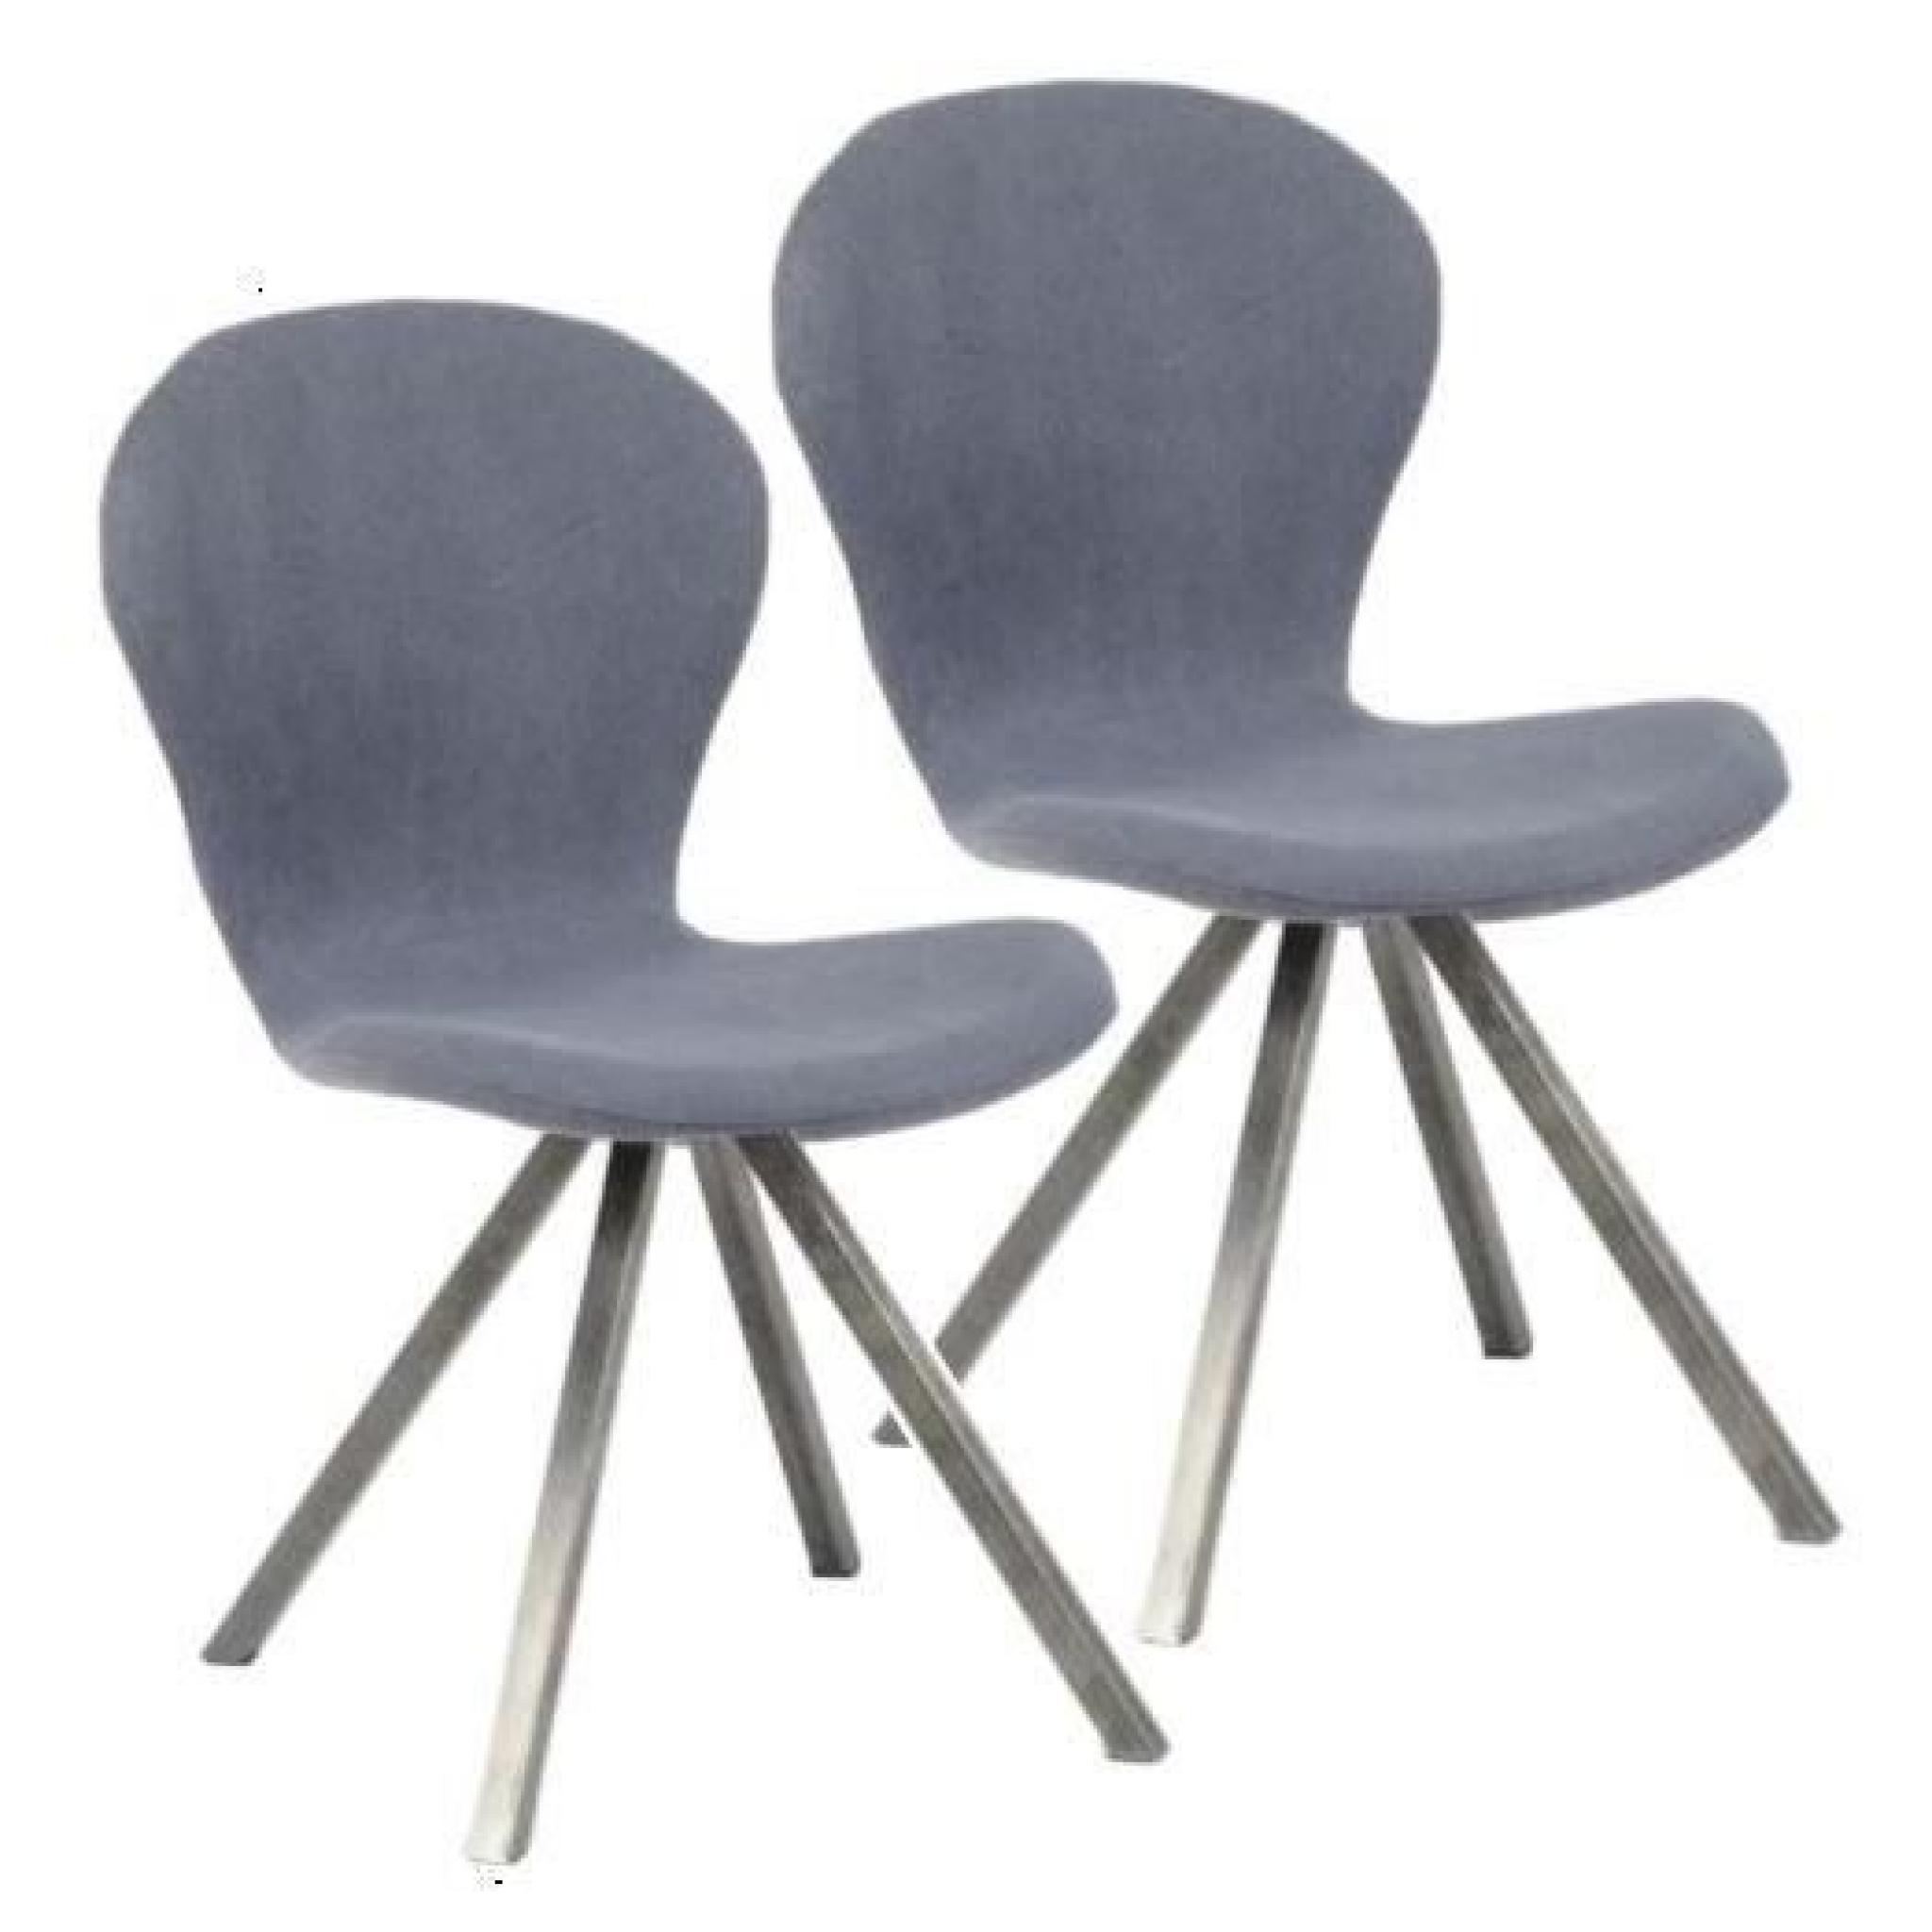 La chaise VALENTIN vous permettra de rester assis des heures durant. Son design à la fois originale et moderne lui permettra de s...